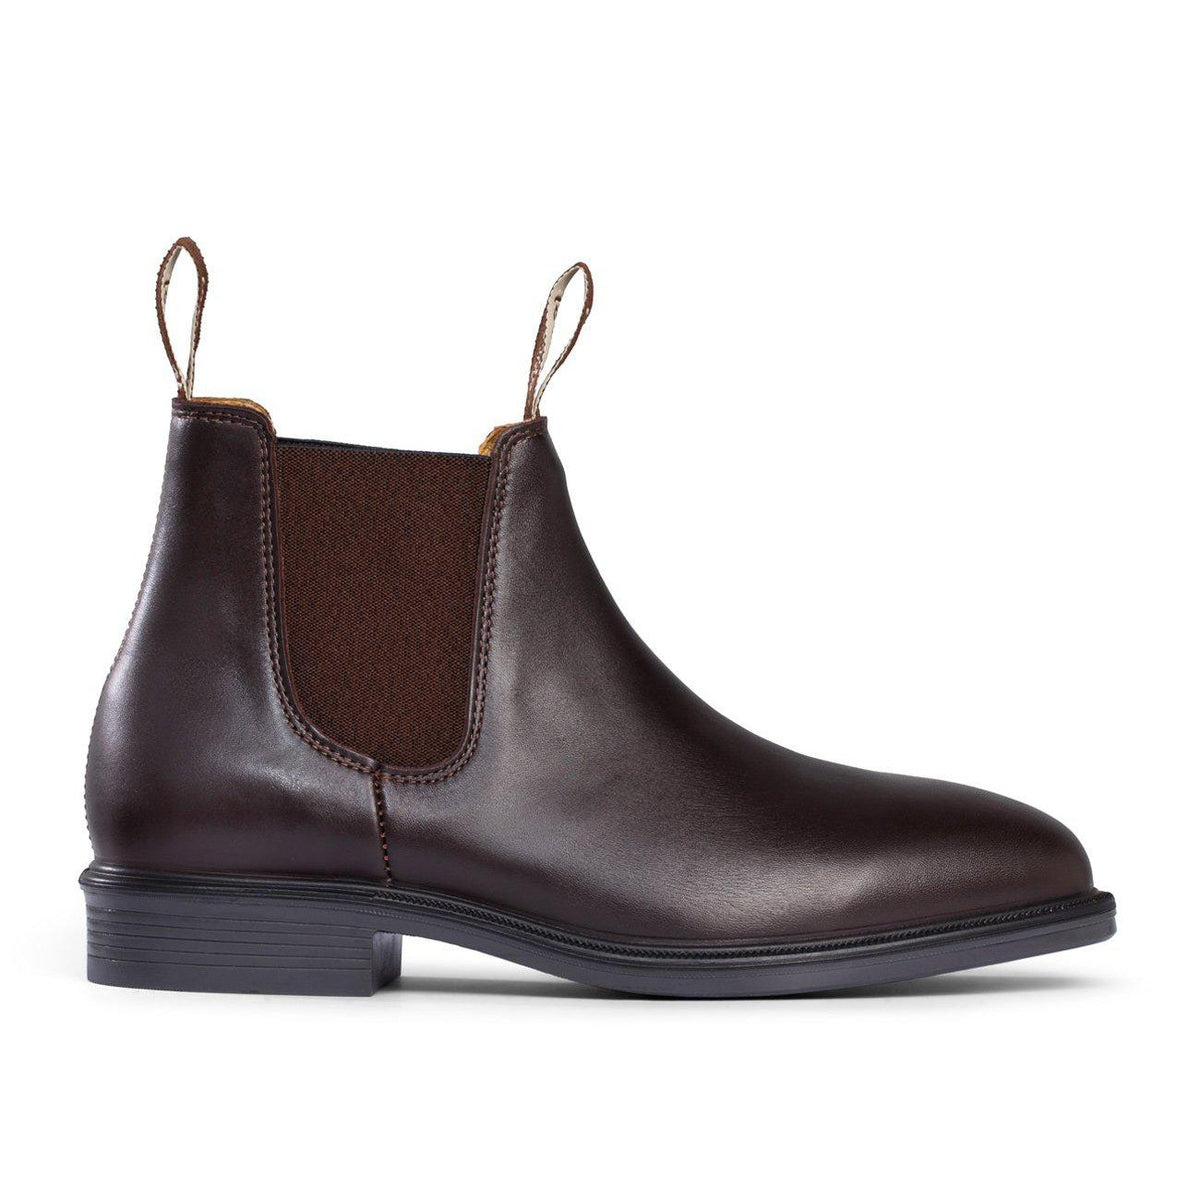 Buy Mongrel Brown Riding Boot - 805070 Online | Queensland Workwear ...